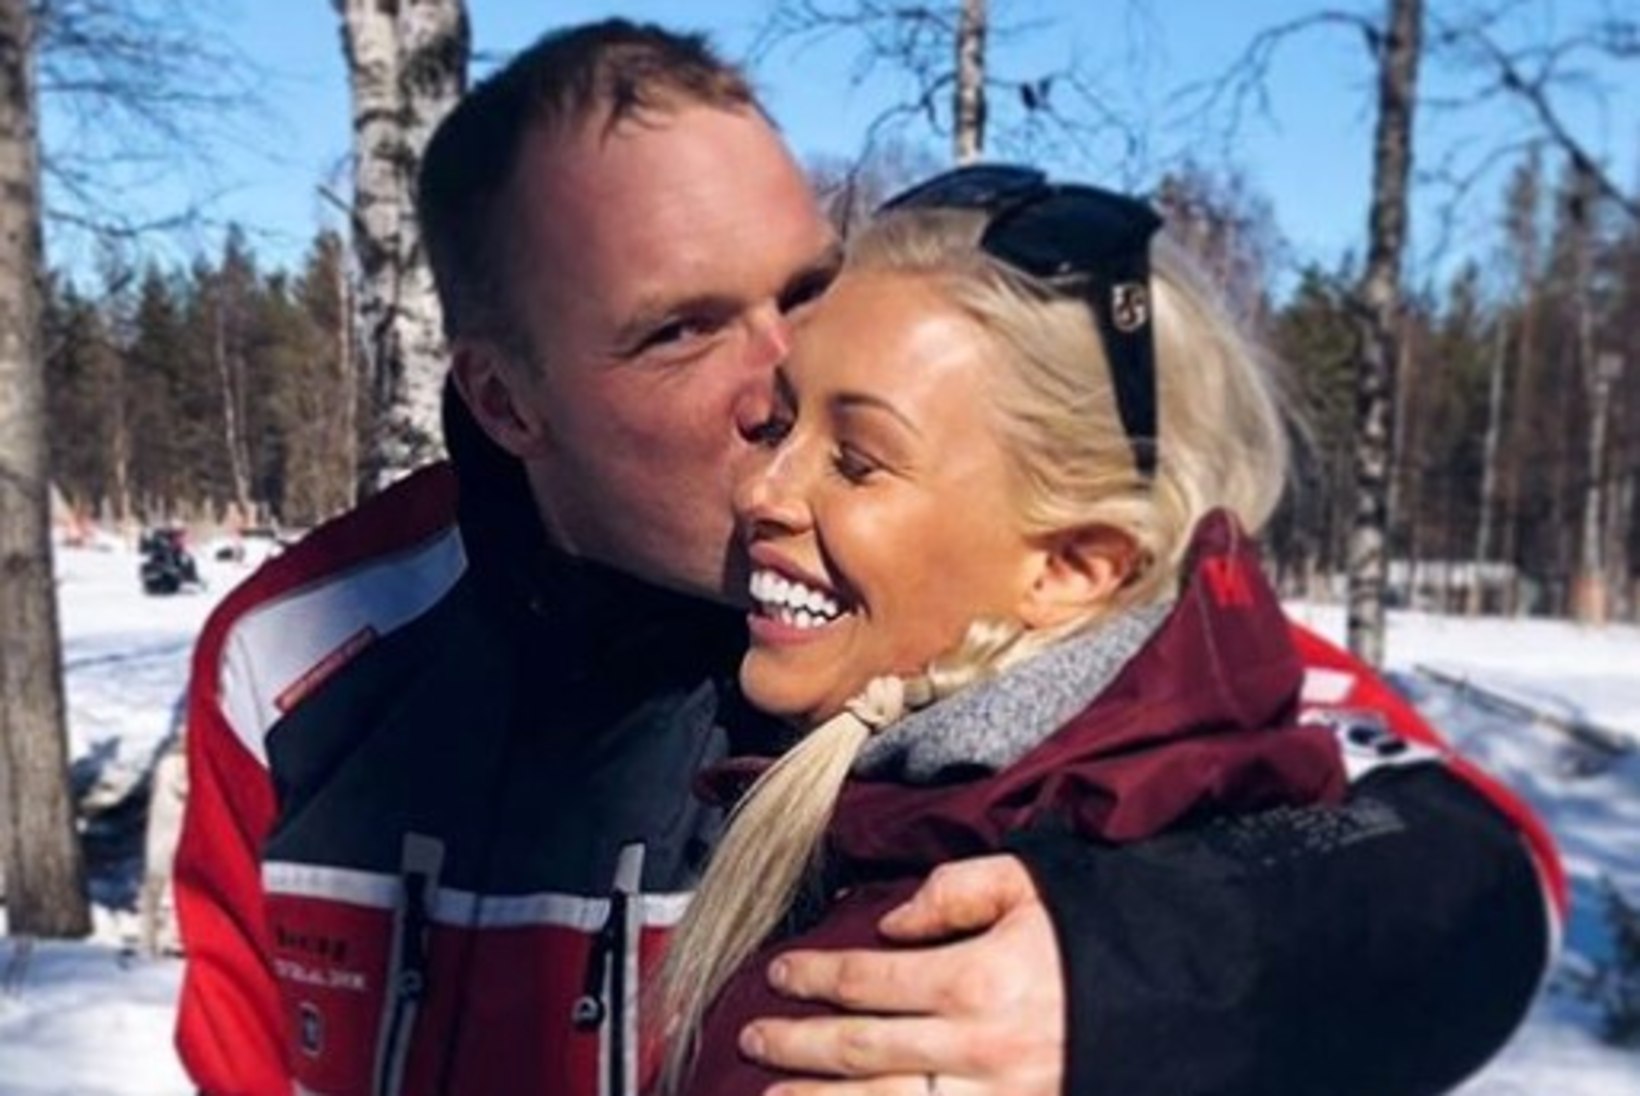 Soome ralliässa ekskihlatu ostis koos uue mehega kalli armupesa